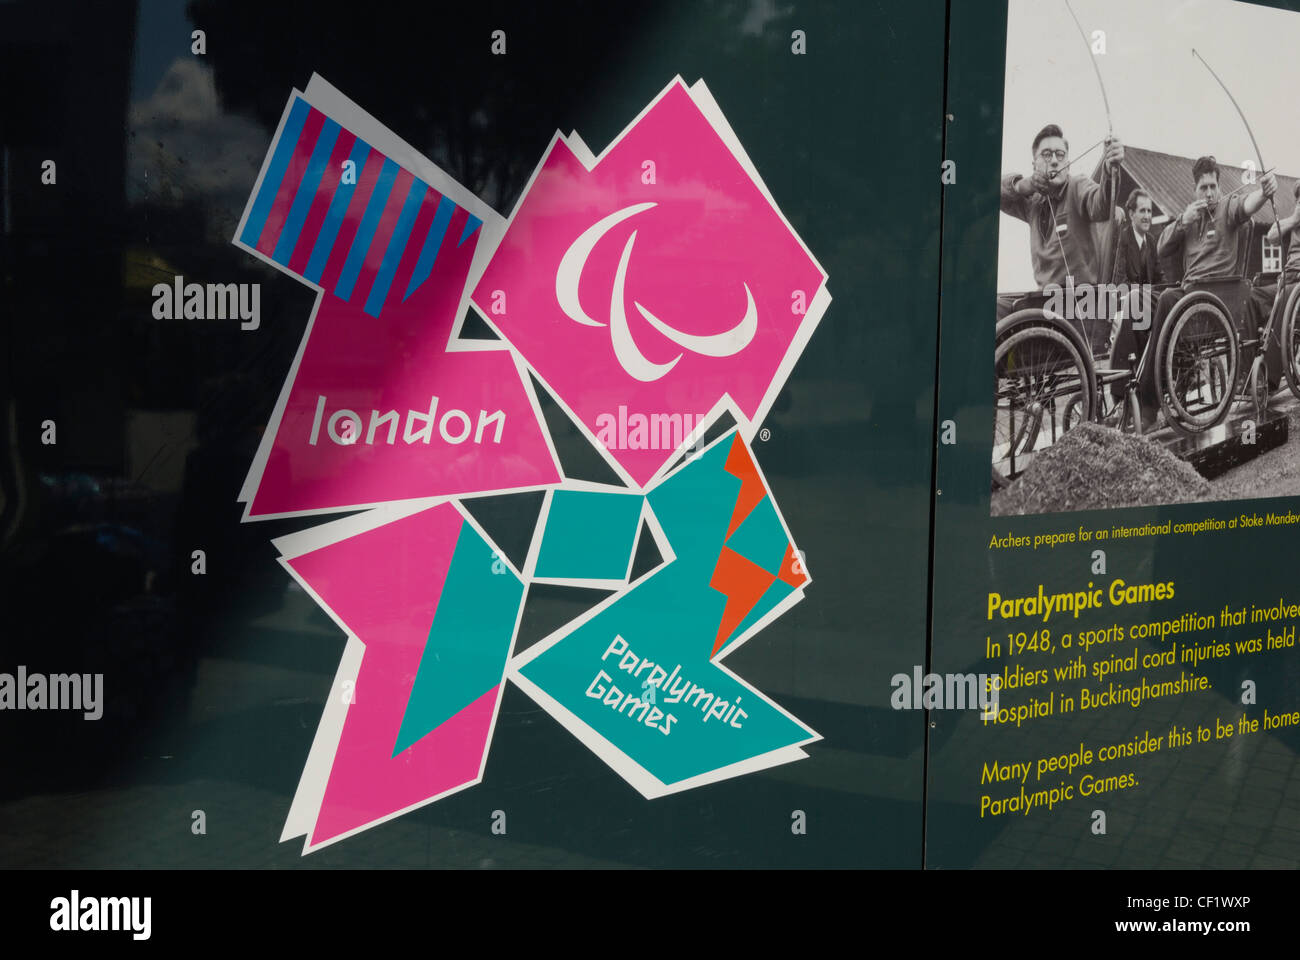 Les Jeux Paralympiques de Londres 2012 logo et de l'information sur les panneaux à l'extérieur de la station de métro Stratford. Banque D'Images